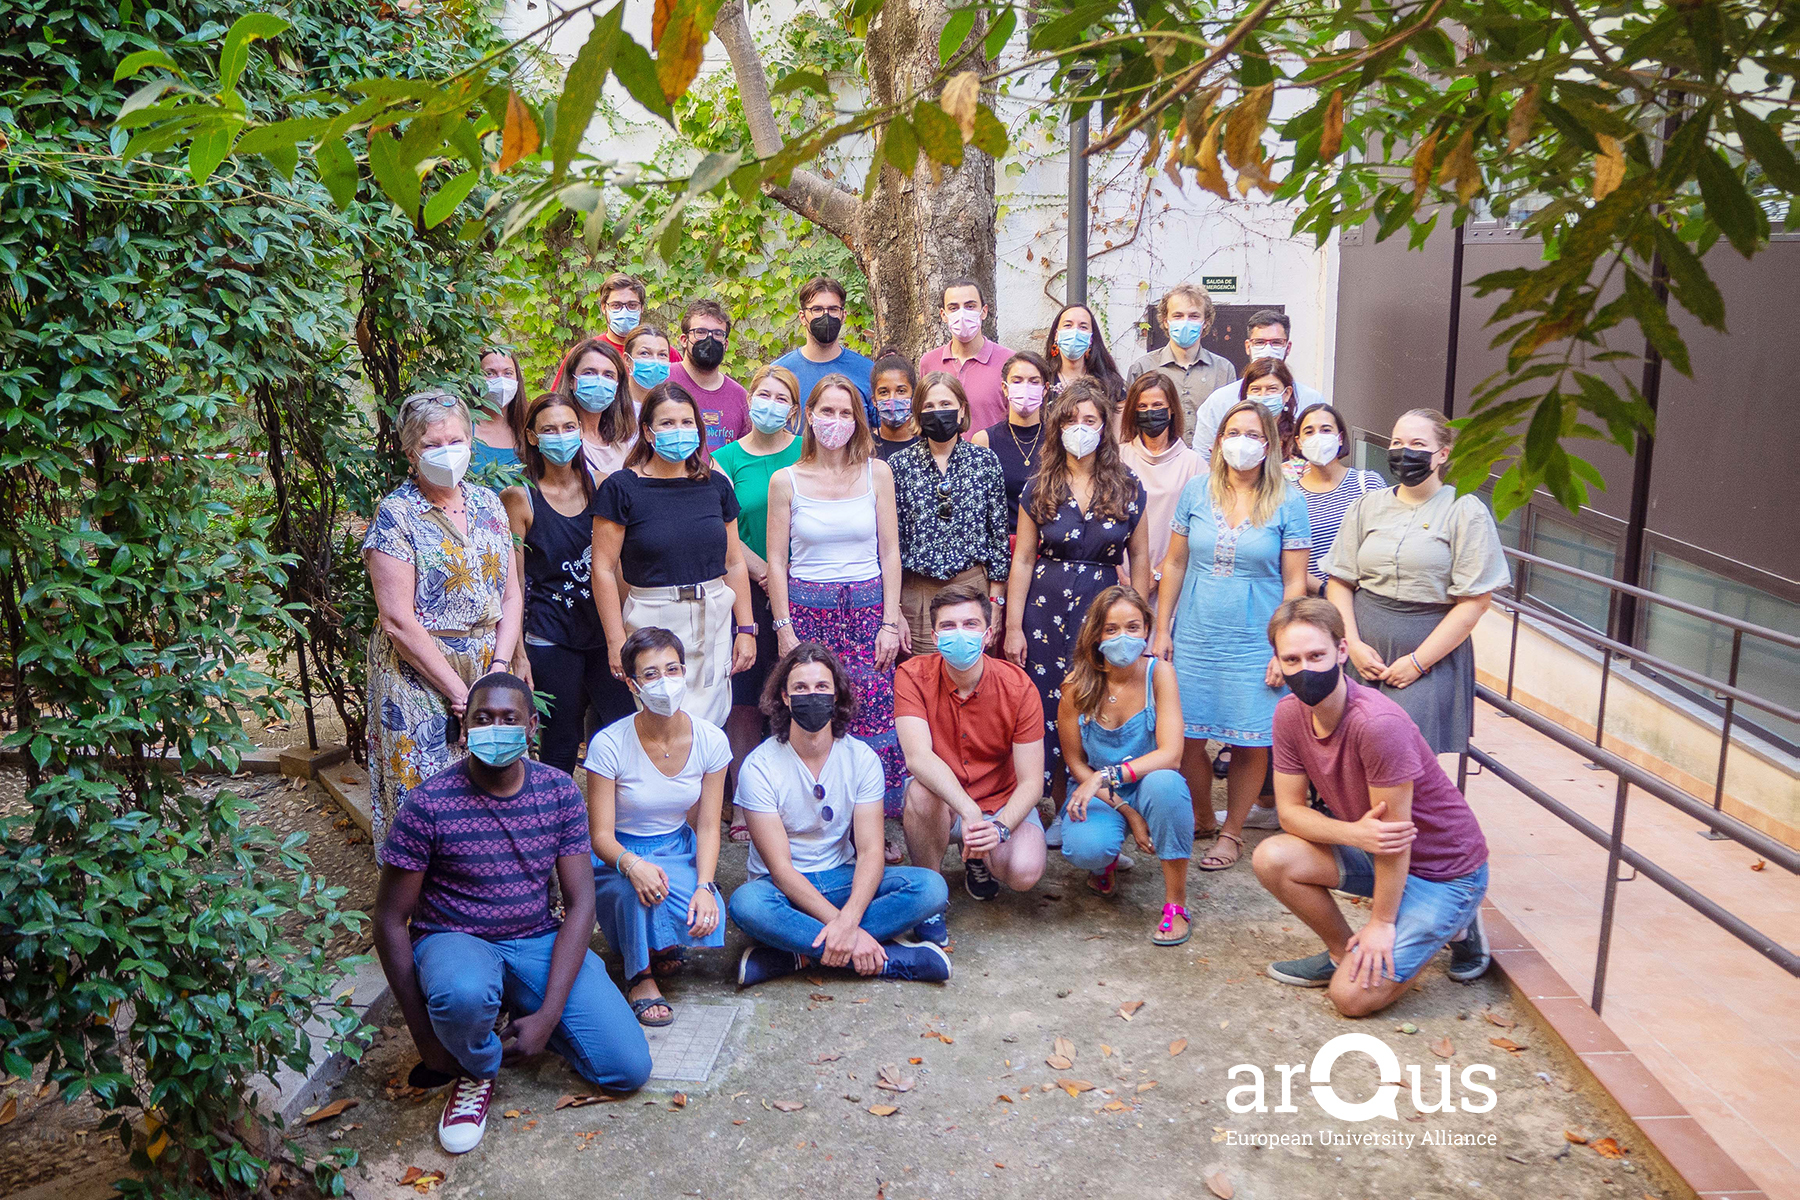 Termina la semana de reuniones presenciales de Arqus en la Universidad de Granada